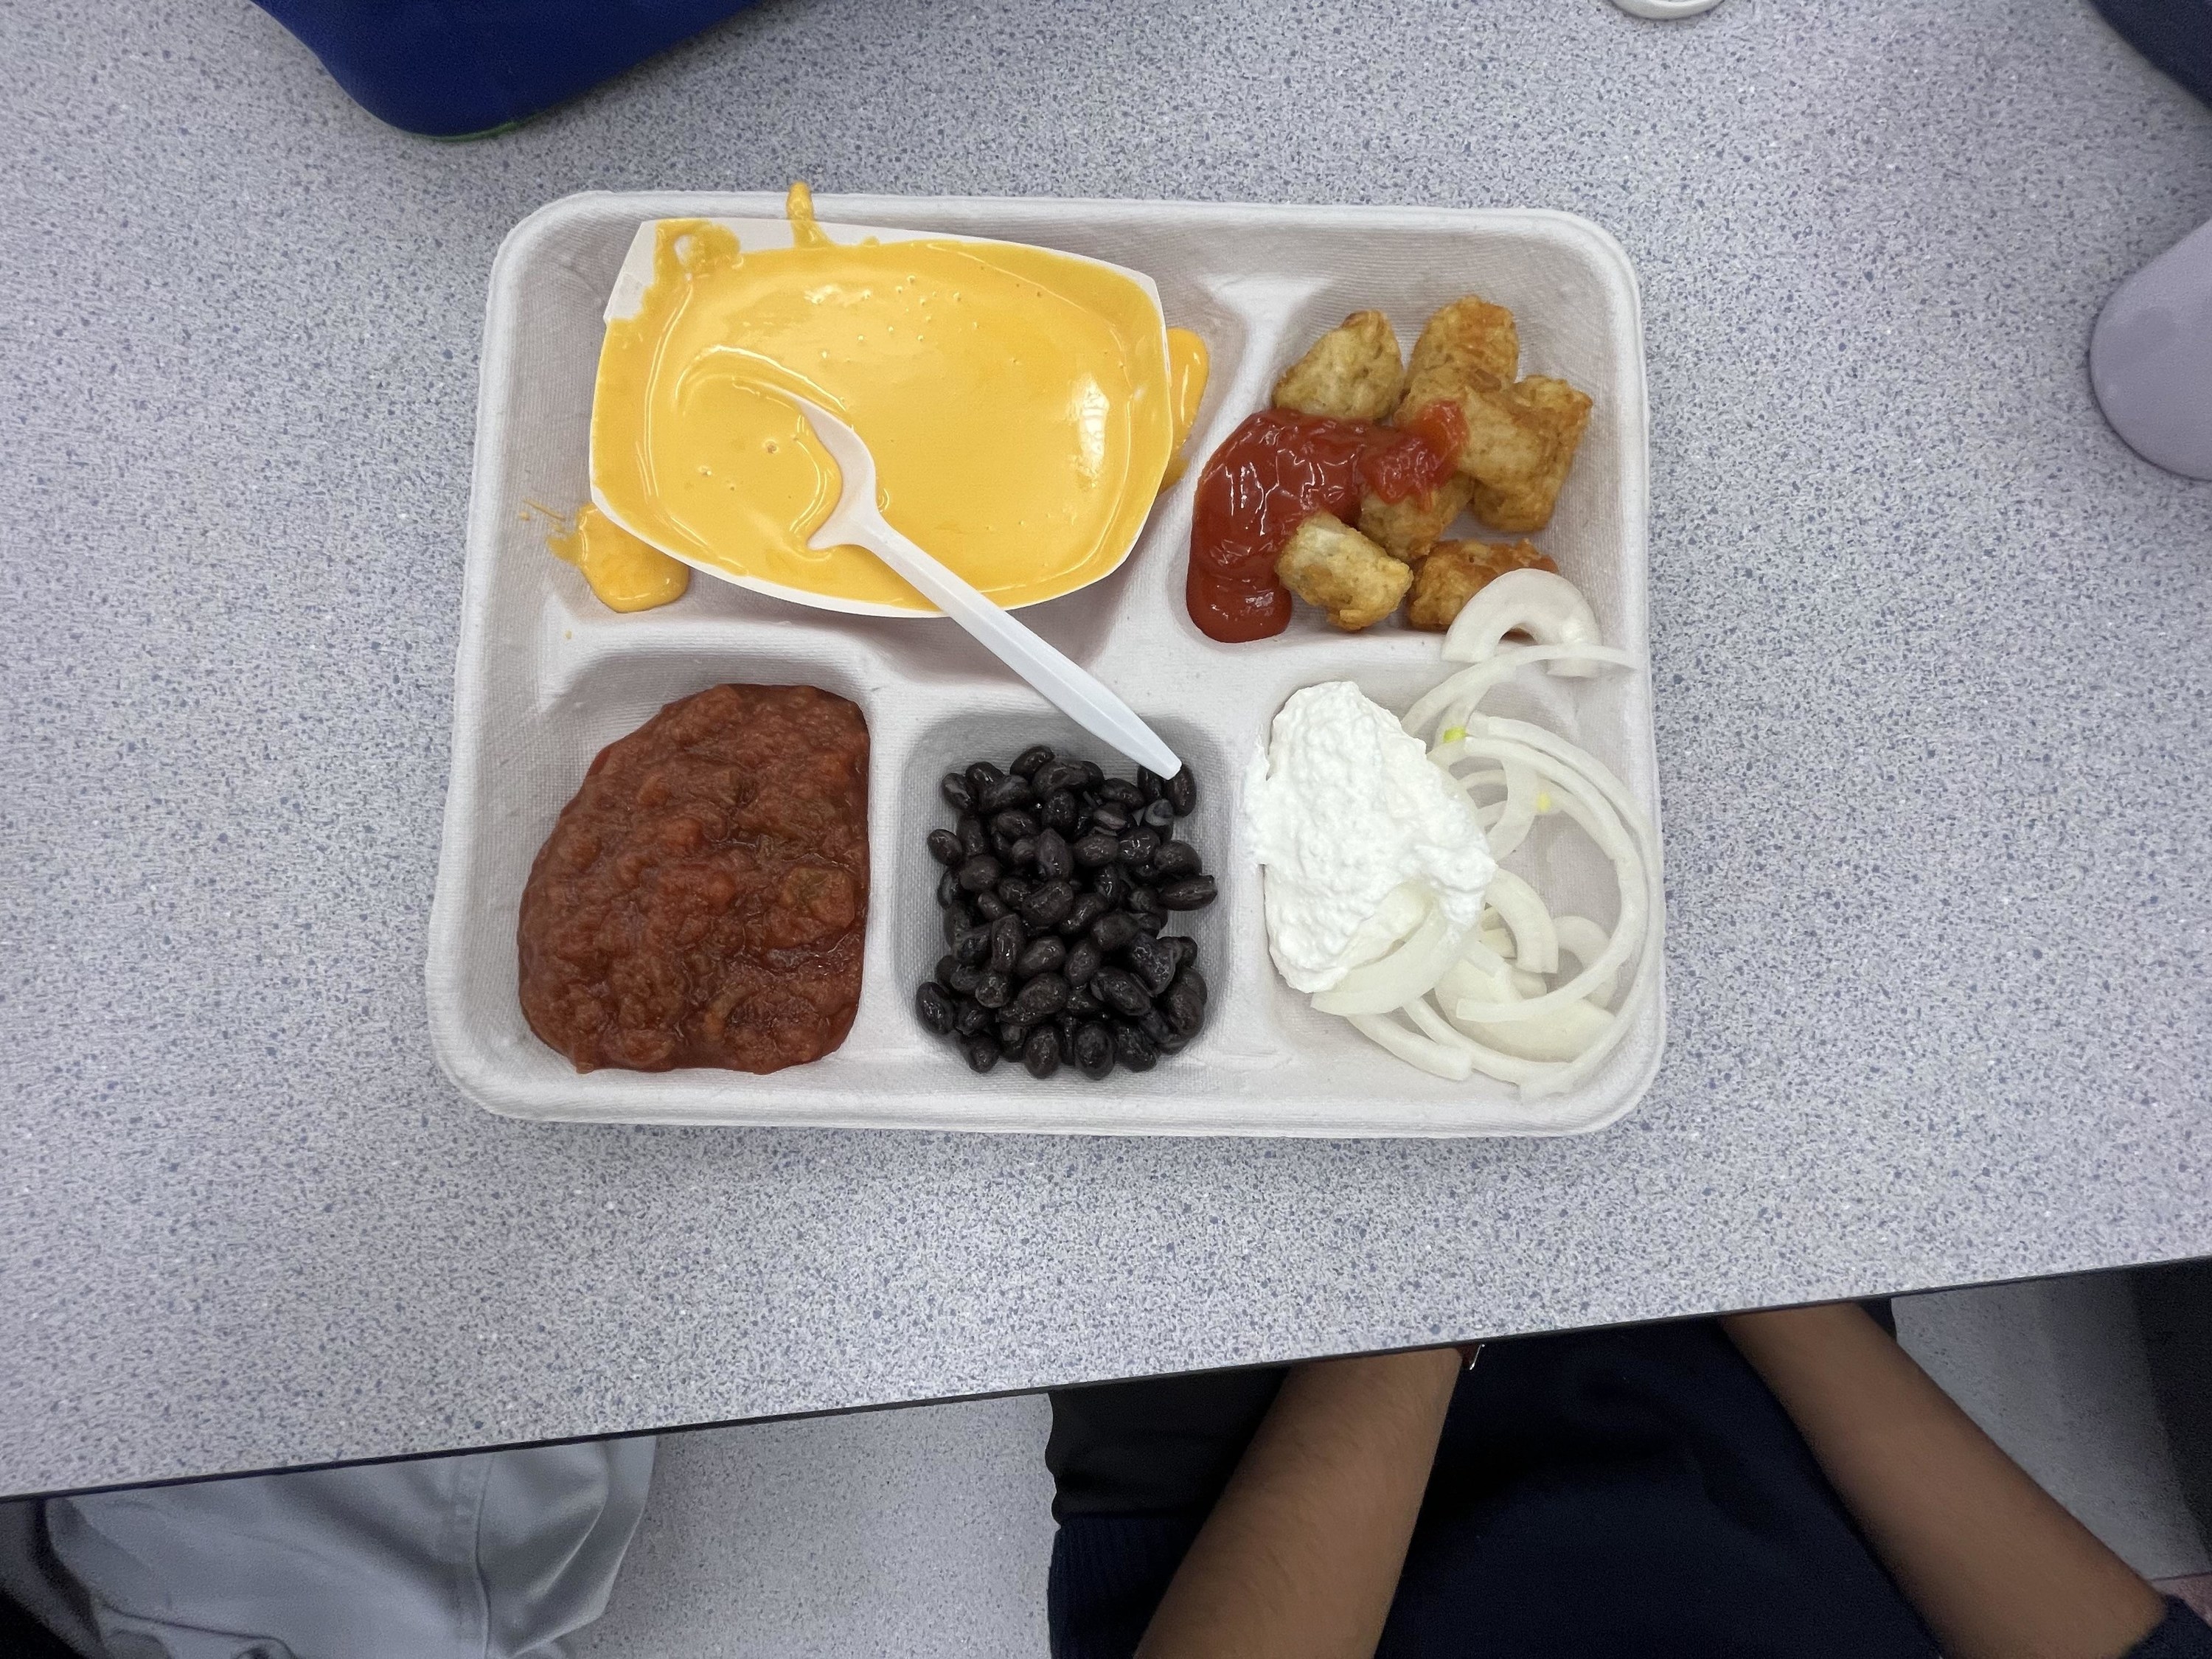 Maryland school lunch